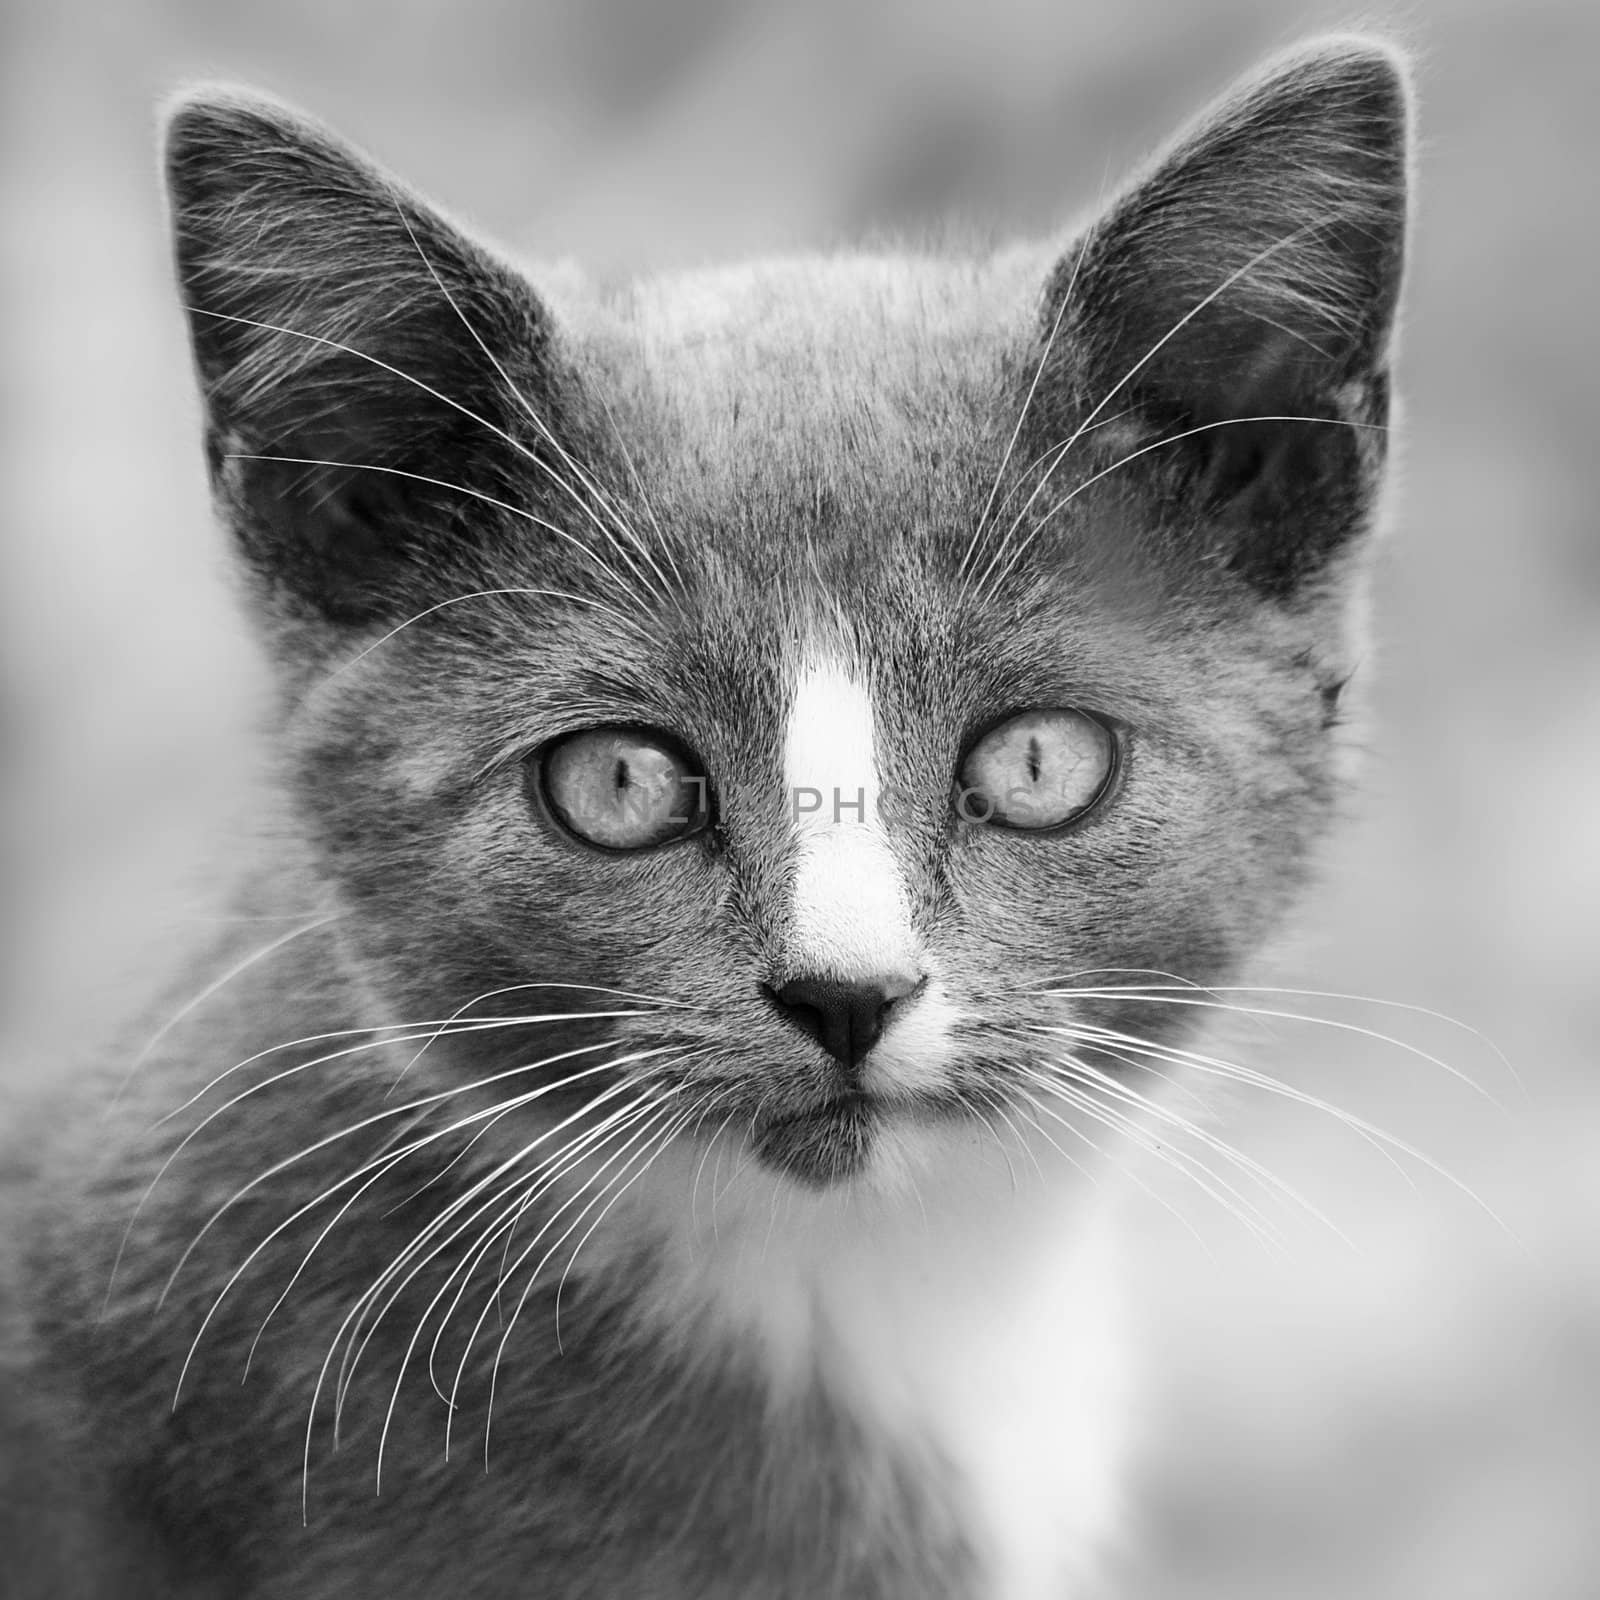 Kitten by chimmi